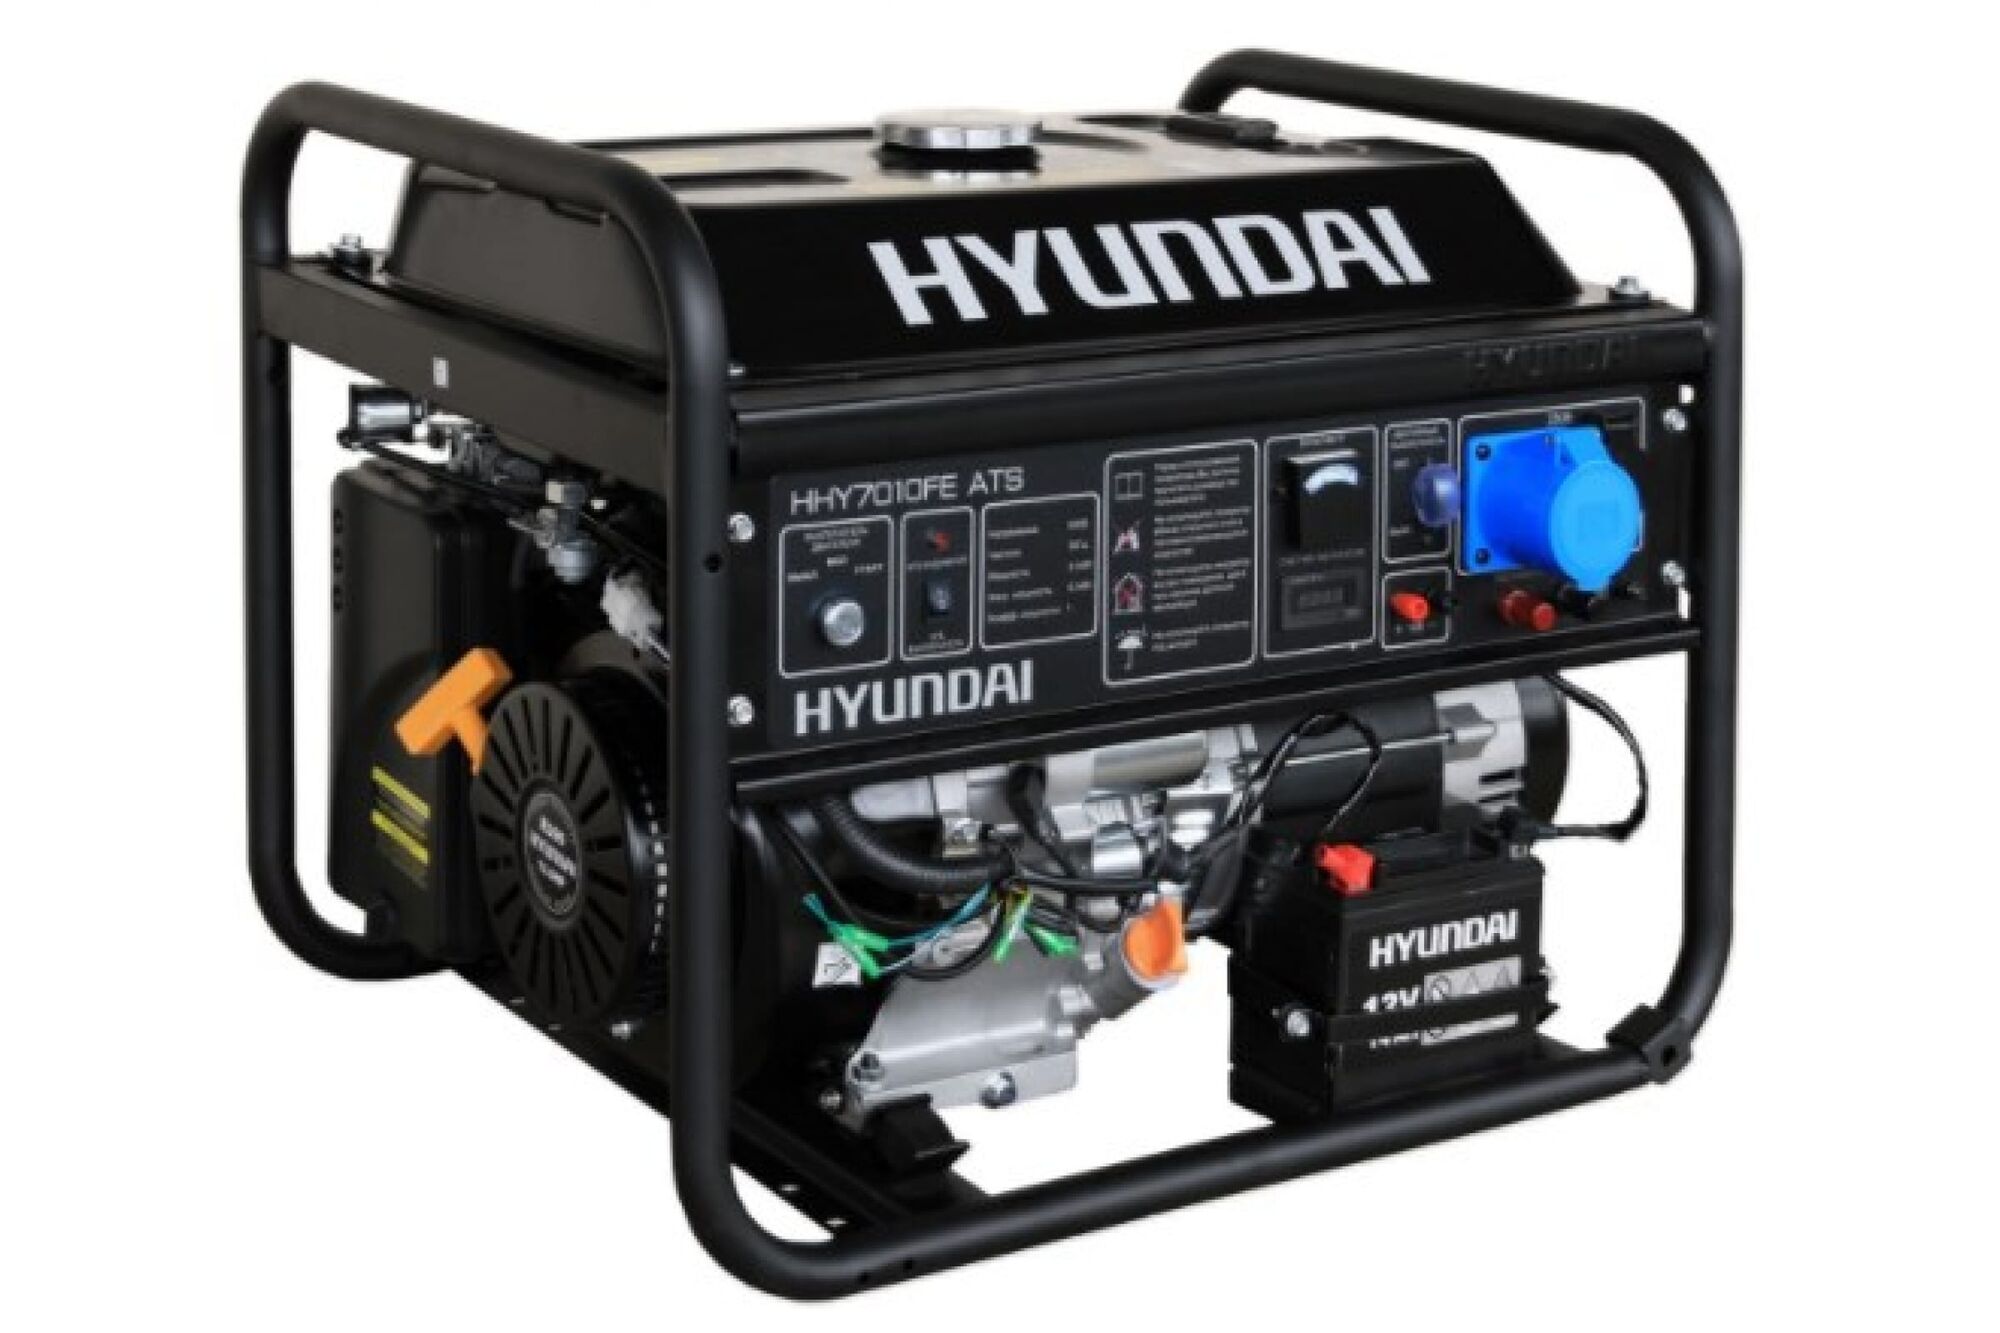 Бензиновый генератор HYUNDAI HHY 7010FE ATS